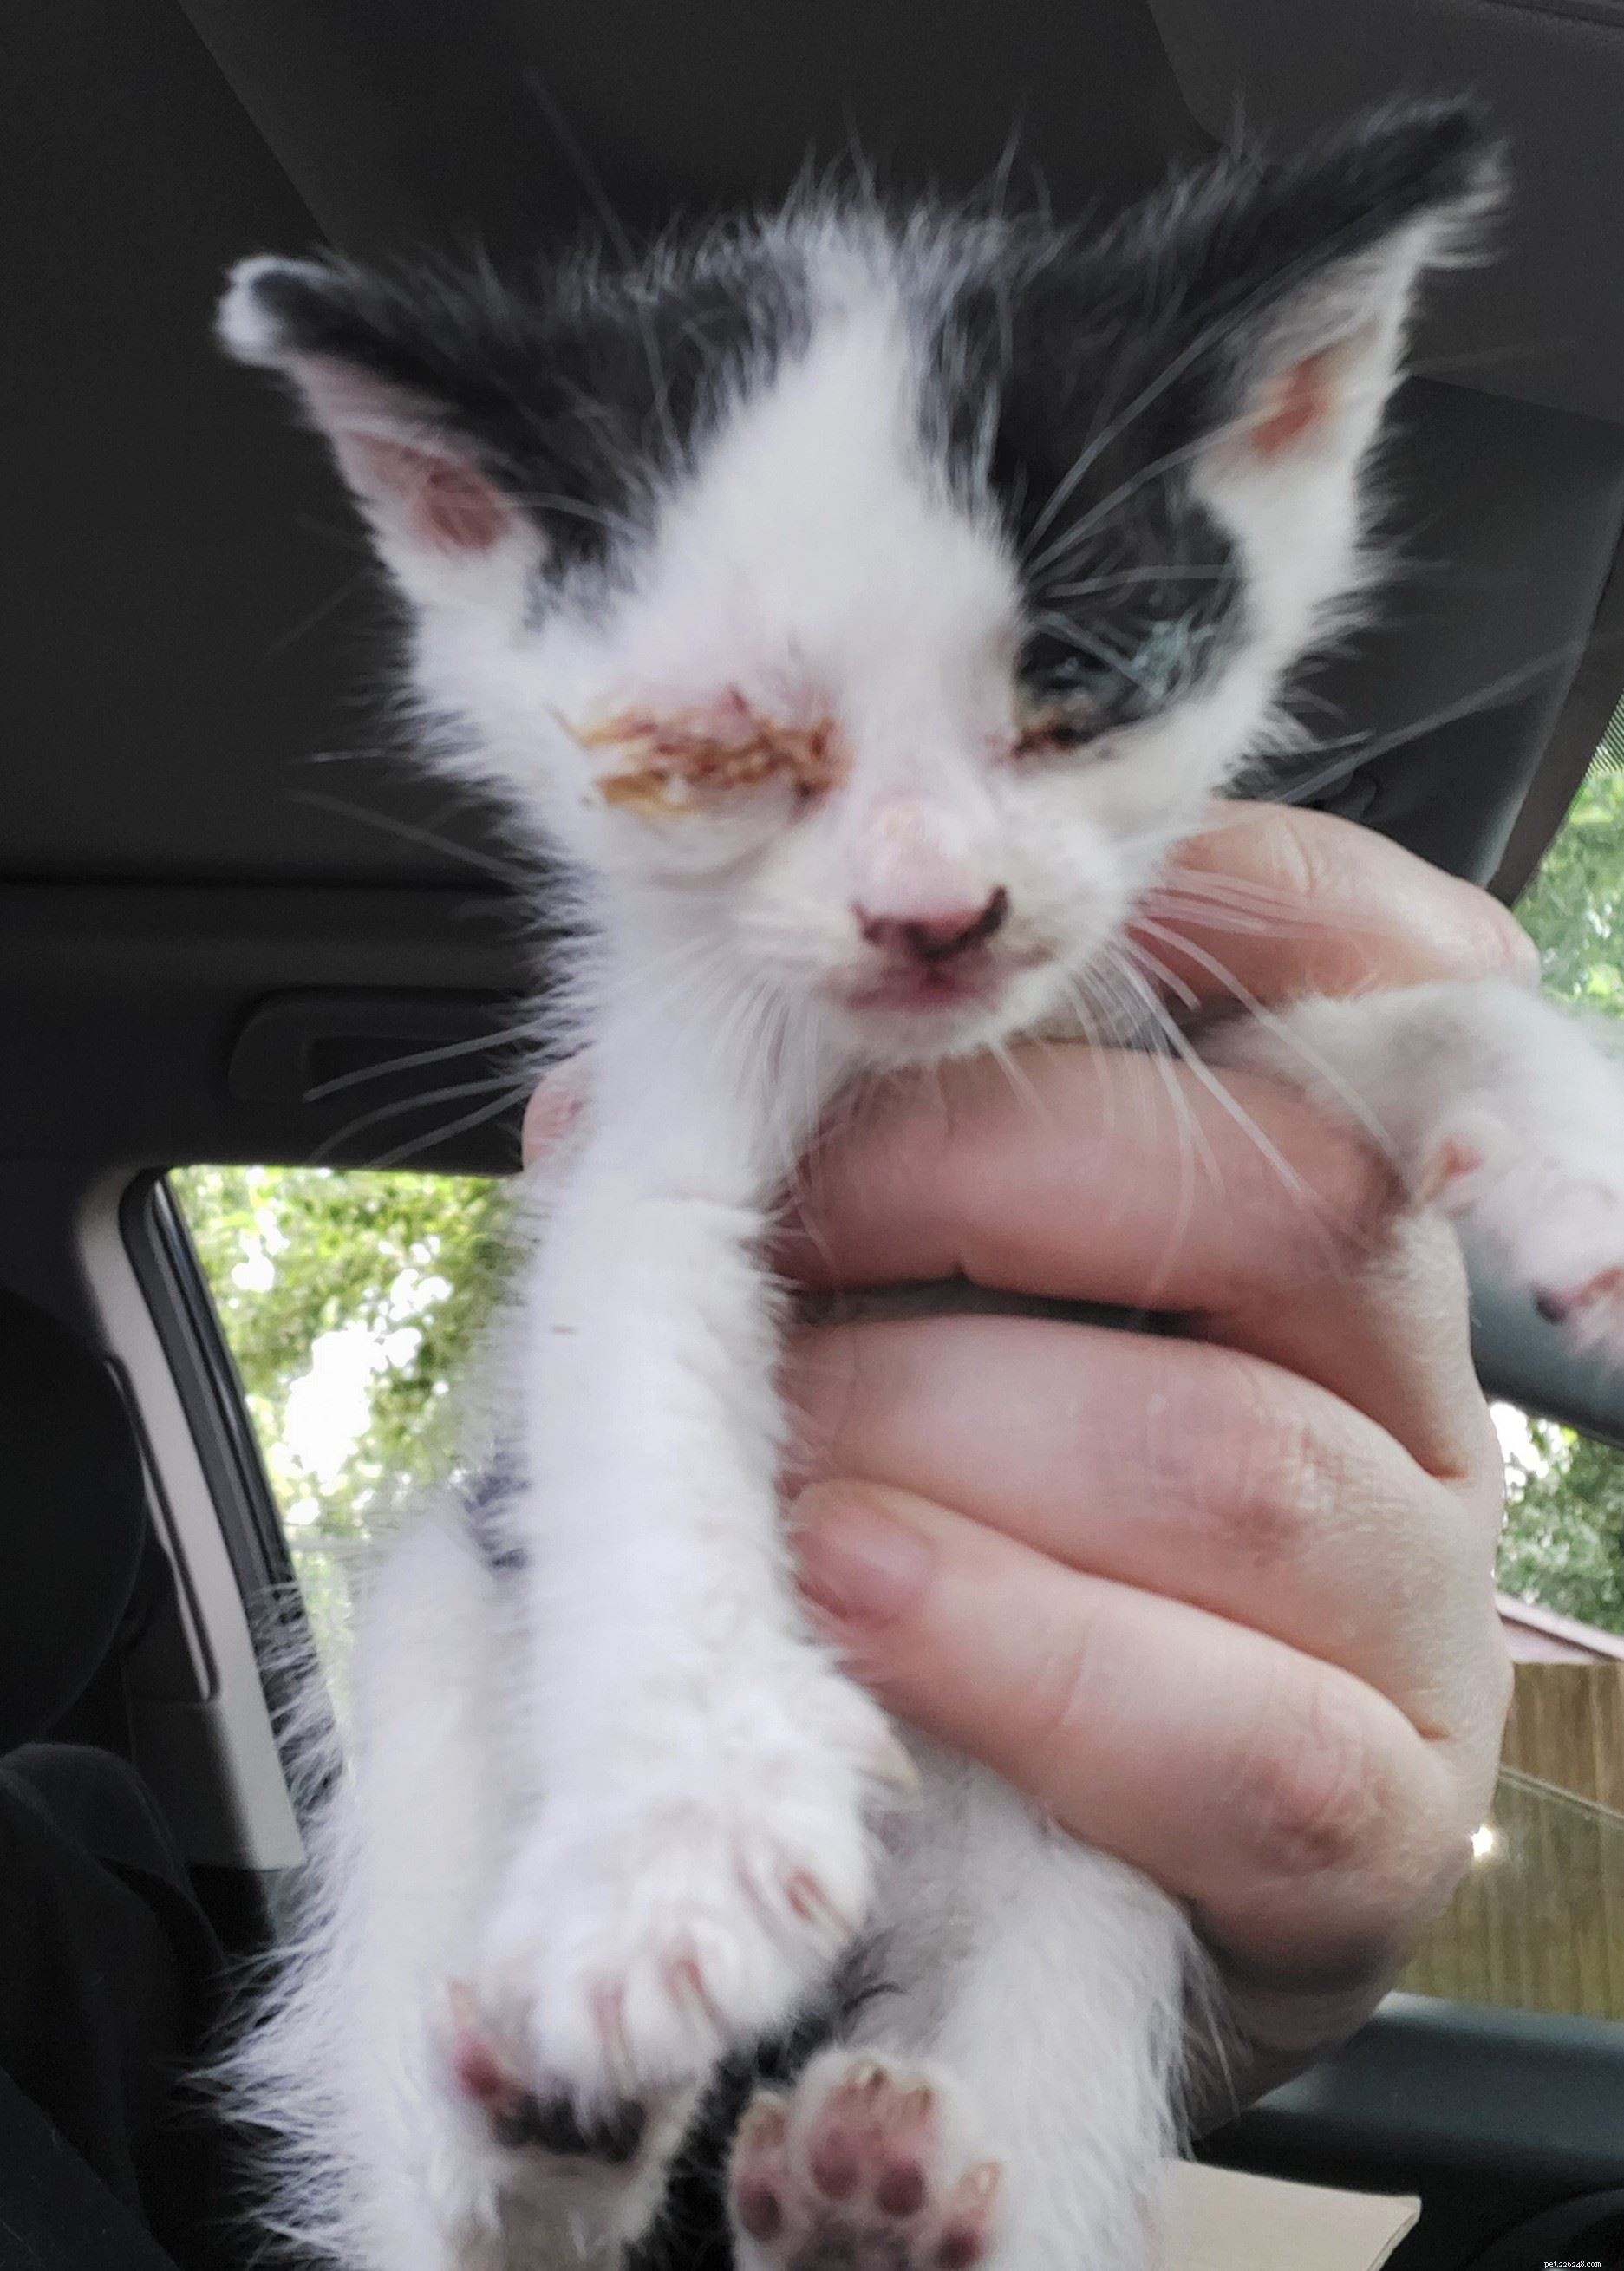 루마니아에서 영국으로 거의 일주일 동안 여행한 후 심하게 탈수된 새끼 고양이가 베이킹 온도에서 구조되었습니다